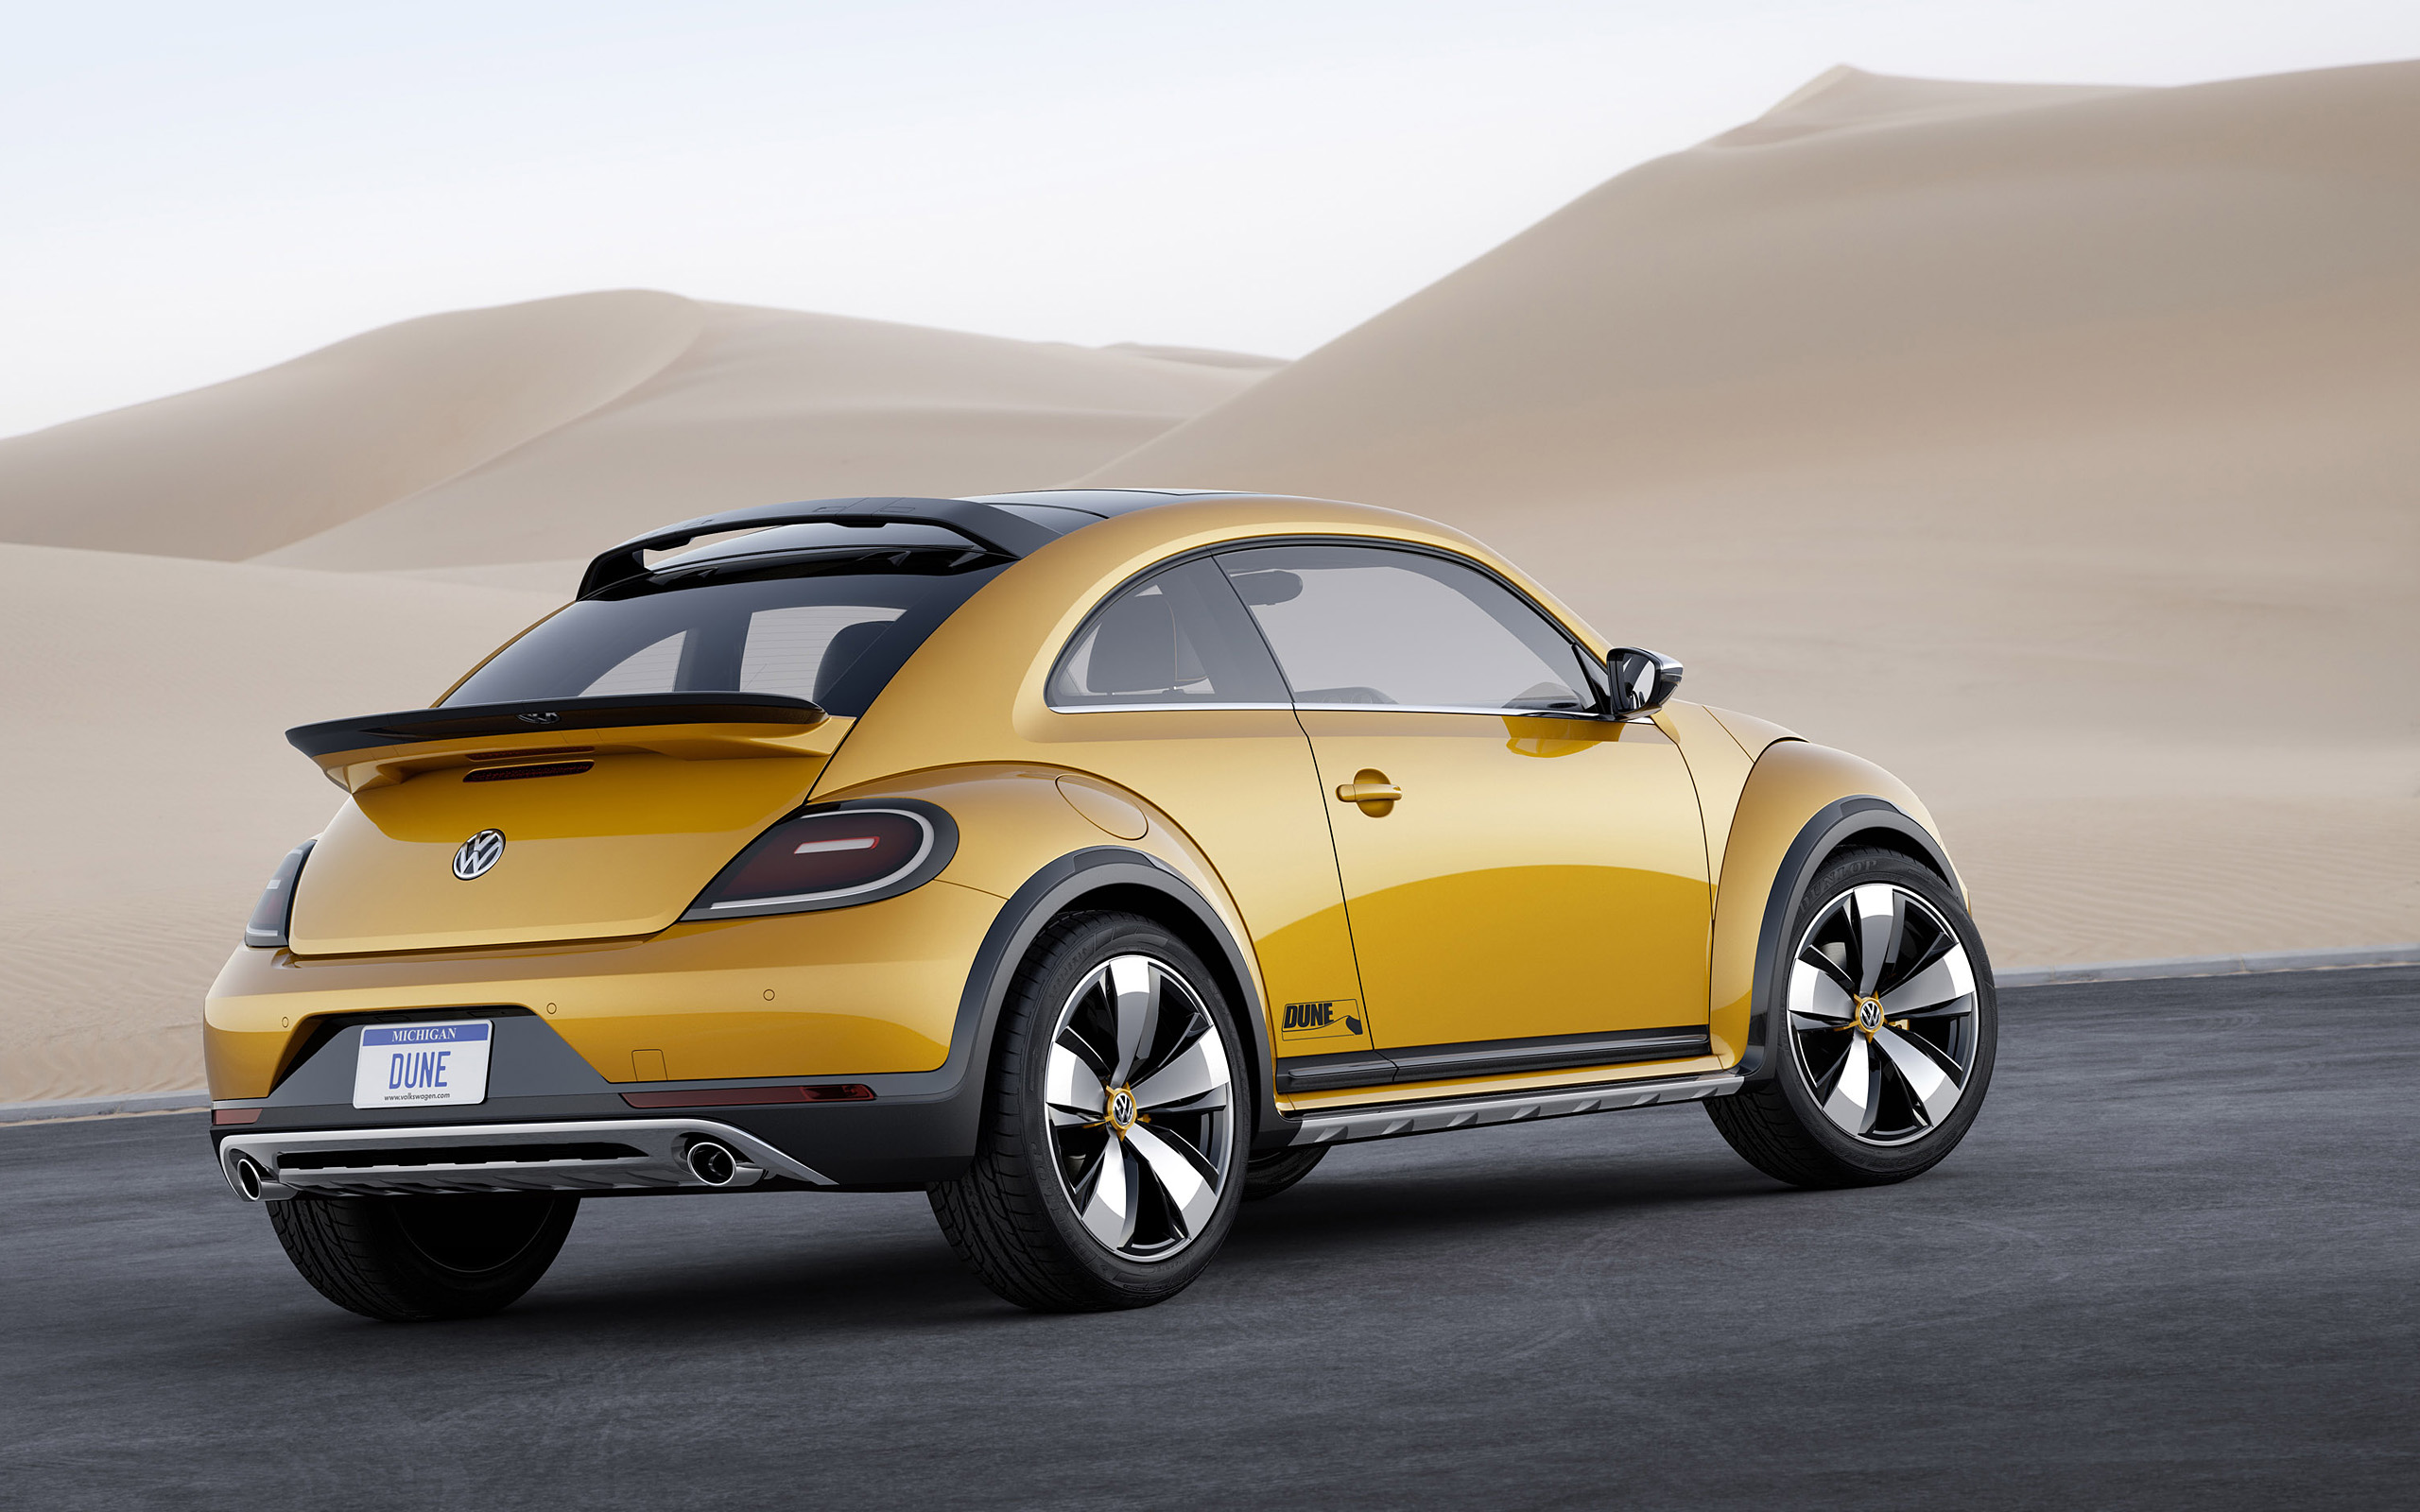  2014 Volkswagen Beetle Dune Concept Wallpaper.